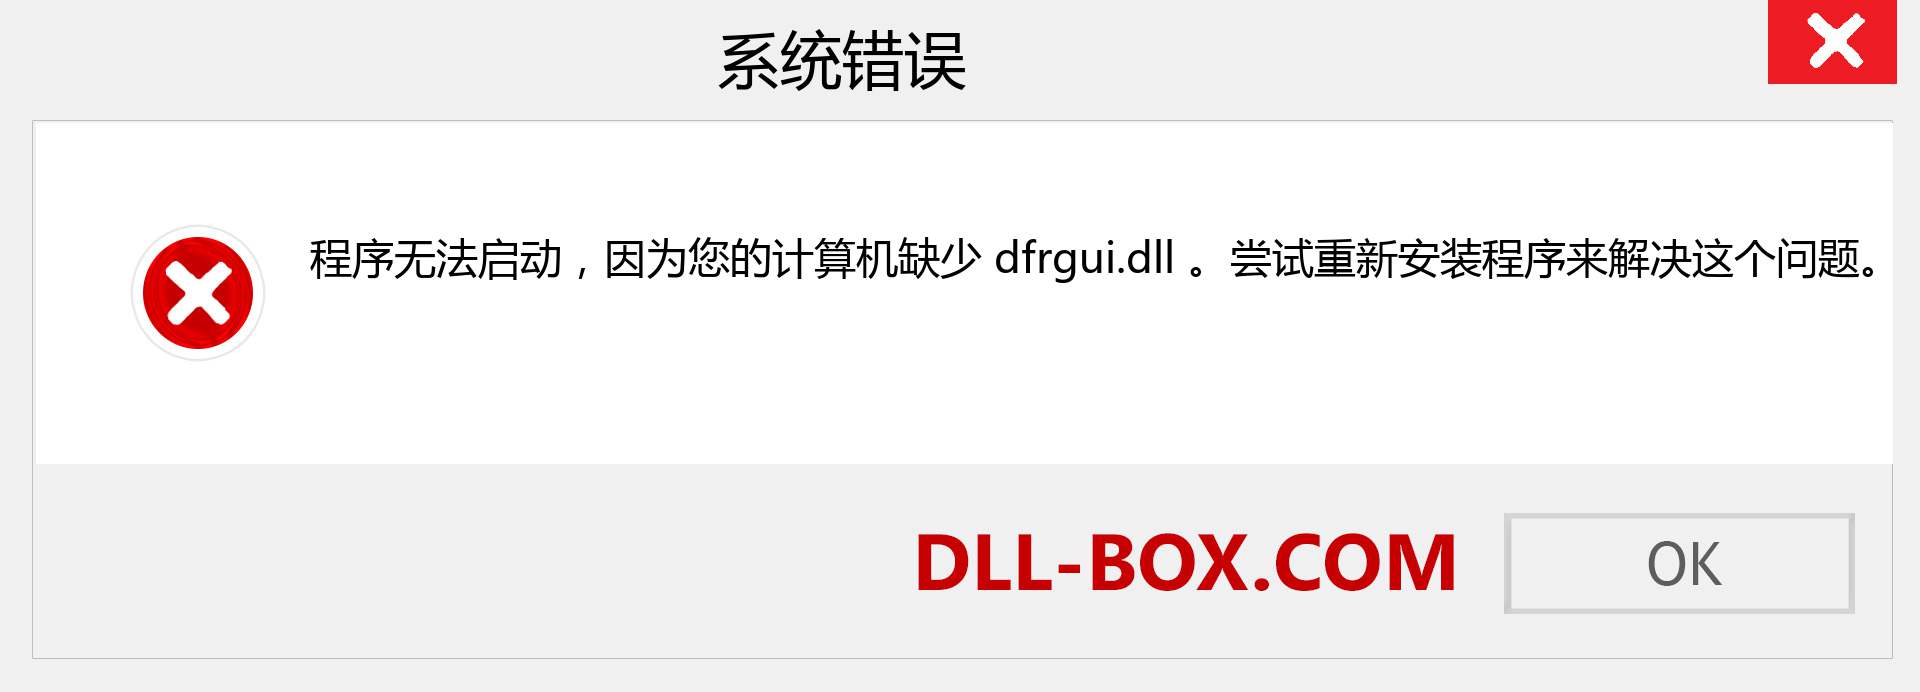 dfrgui.dll 文件丢失？。 适用于 Windows 7、8、10 的下载 - 修复 Windows、照片、图像上的 dfrgui dll 丢失错误